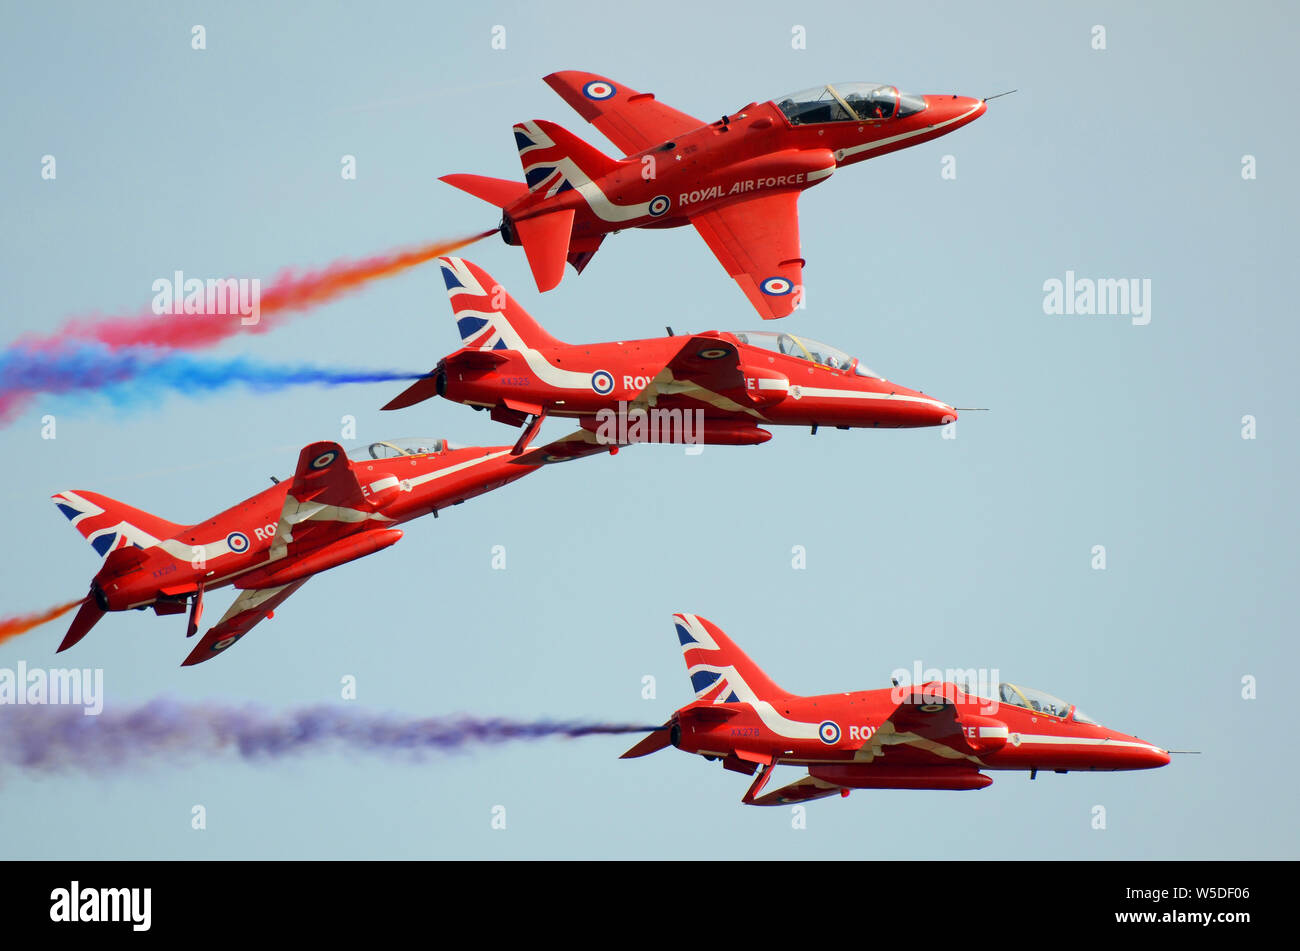 Royal Air Force Red Arrows, RAF Kunstflugteam The Red Arrows, die ihre Roll Backs auf einer Flugschau in ihren BAE Hawk-Düsenflugzeugen vorführen Stockfoto